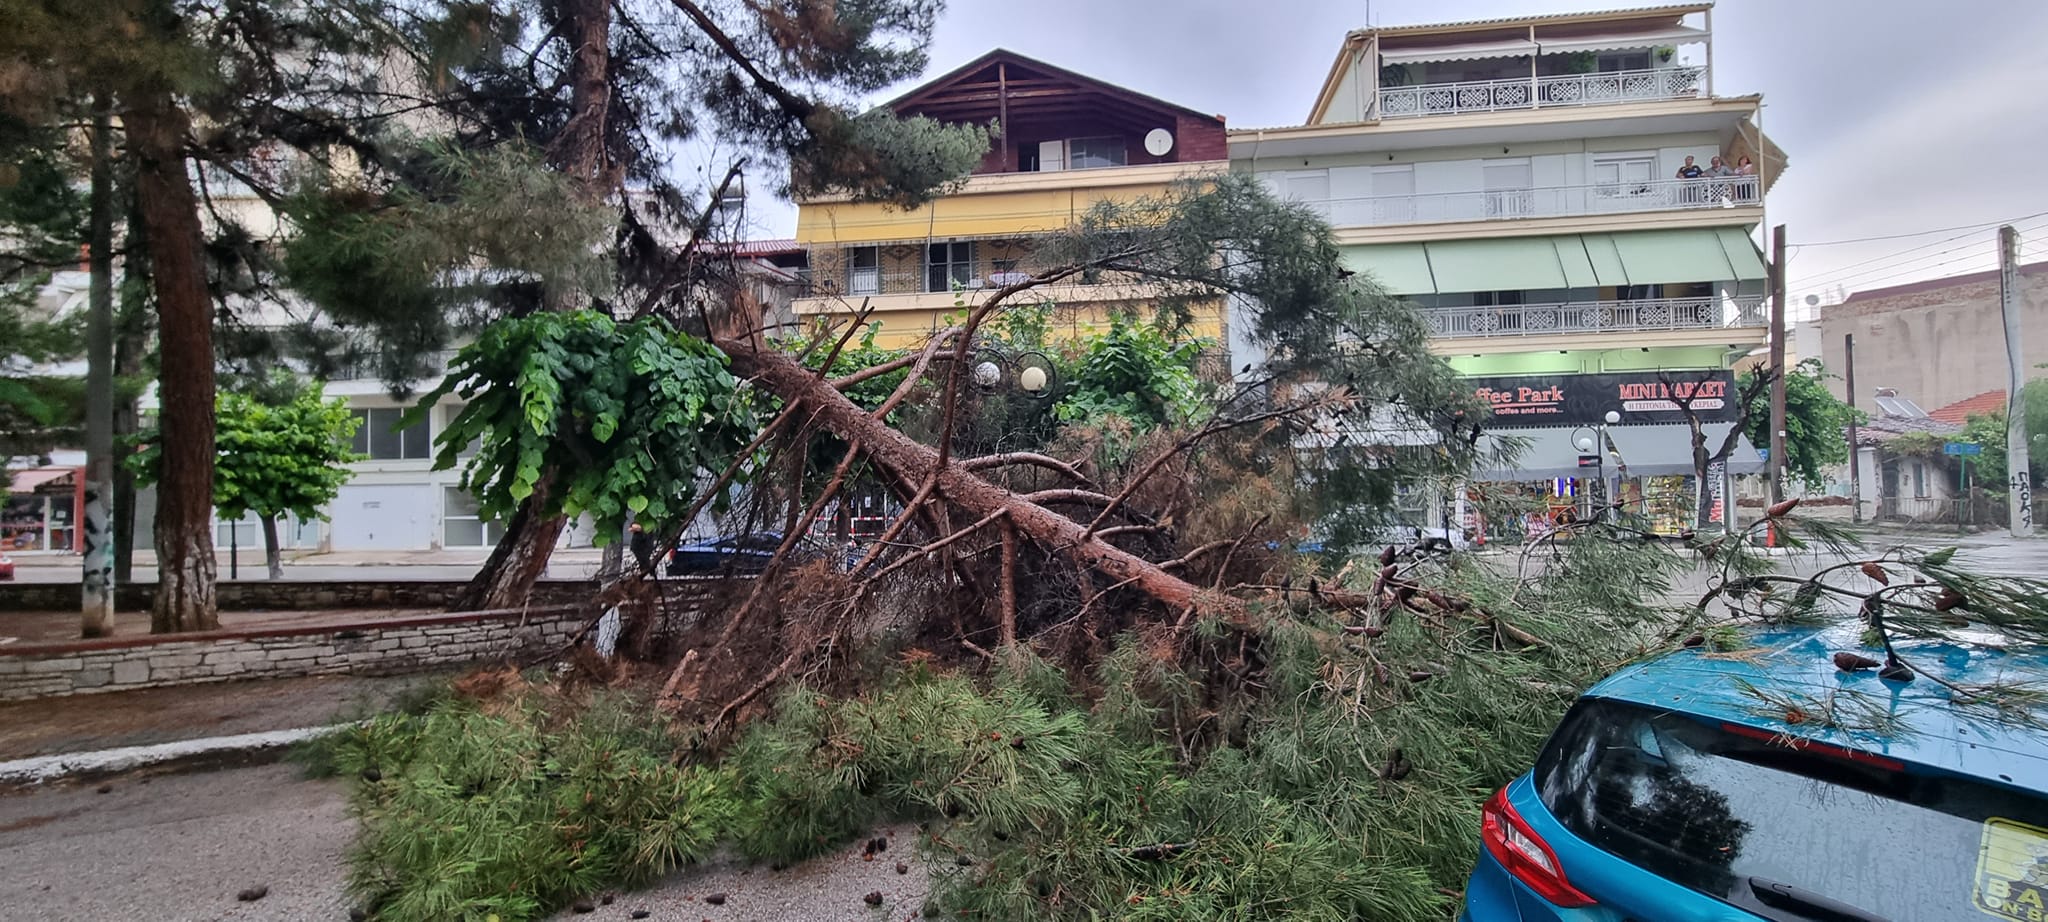 Πτολεμαϊδα: Δέντρο έπεσε σε πάρκο - Έπαιζαν παιδιά στο σημείο ΦΩΤΟ - ΒΙΝΤΕΟ